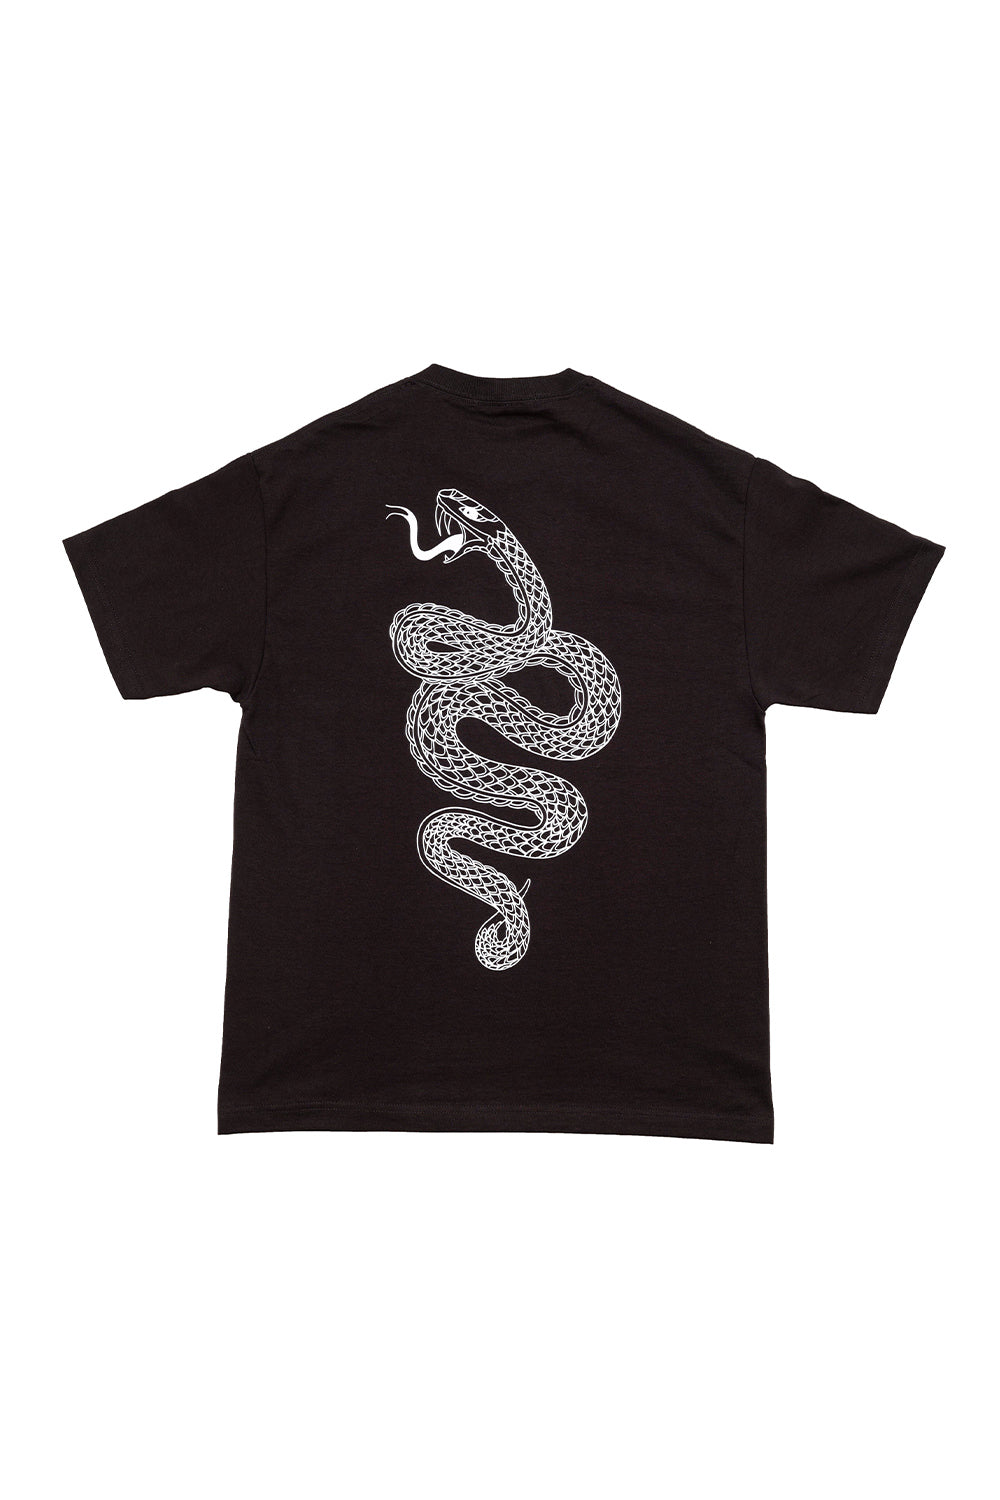 Poolroom Skateboards | Poolroom Brown Snake T-Shirt - Black